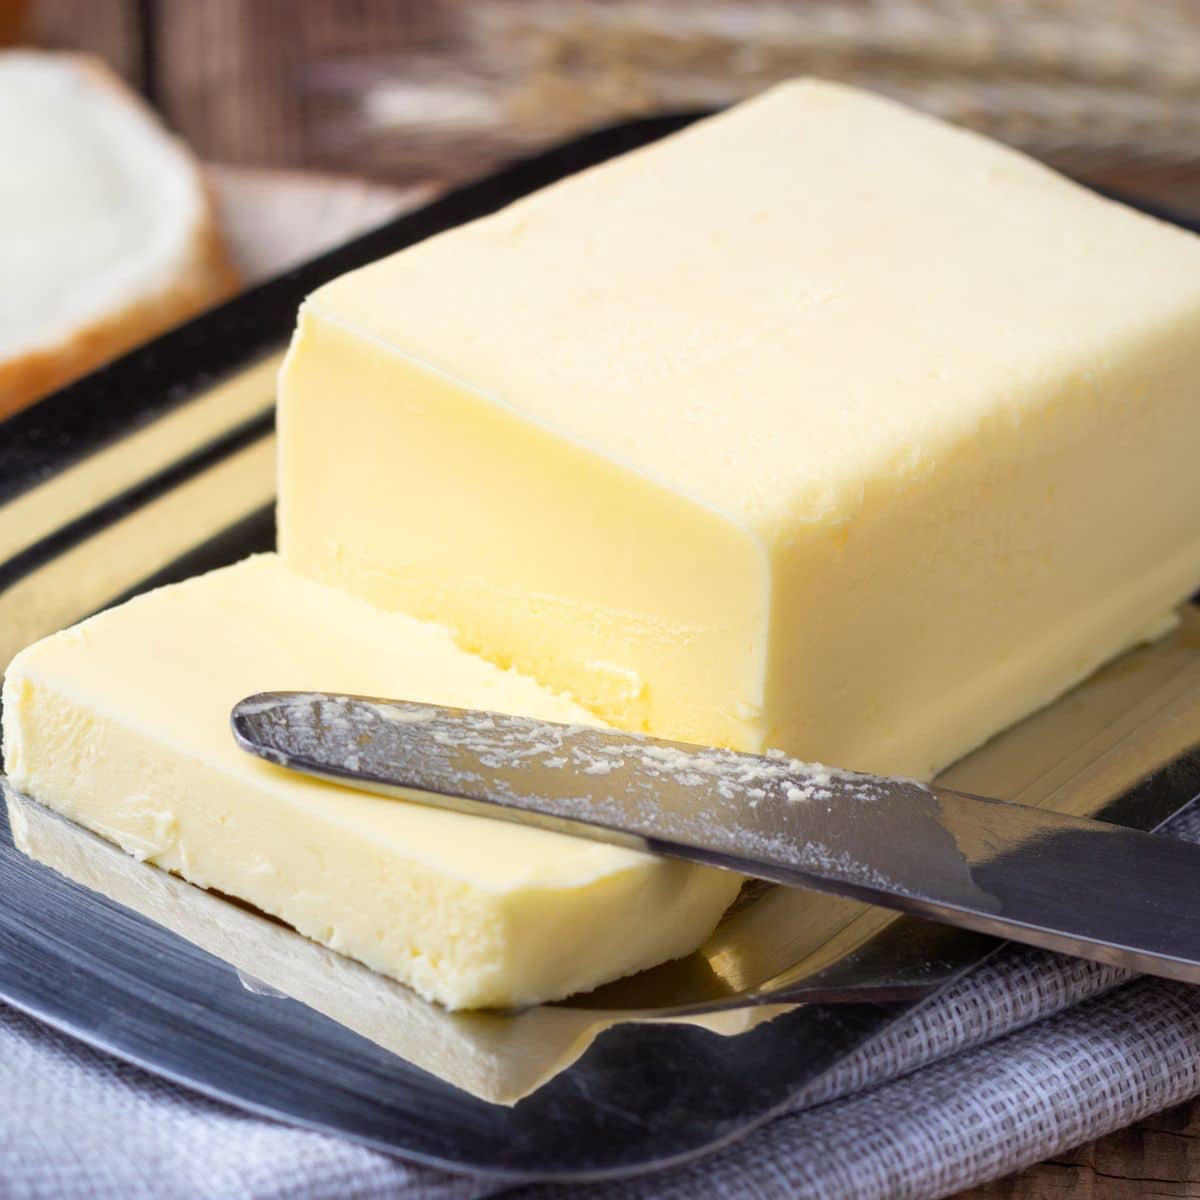 Vierkant beeld van margarine.